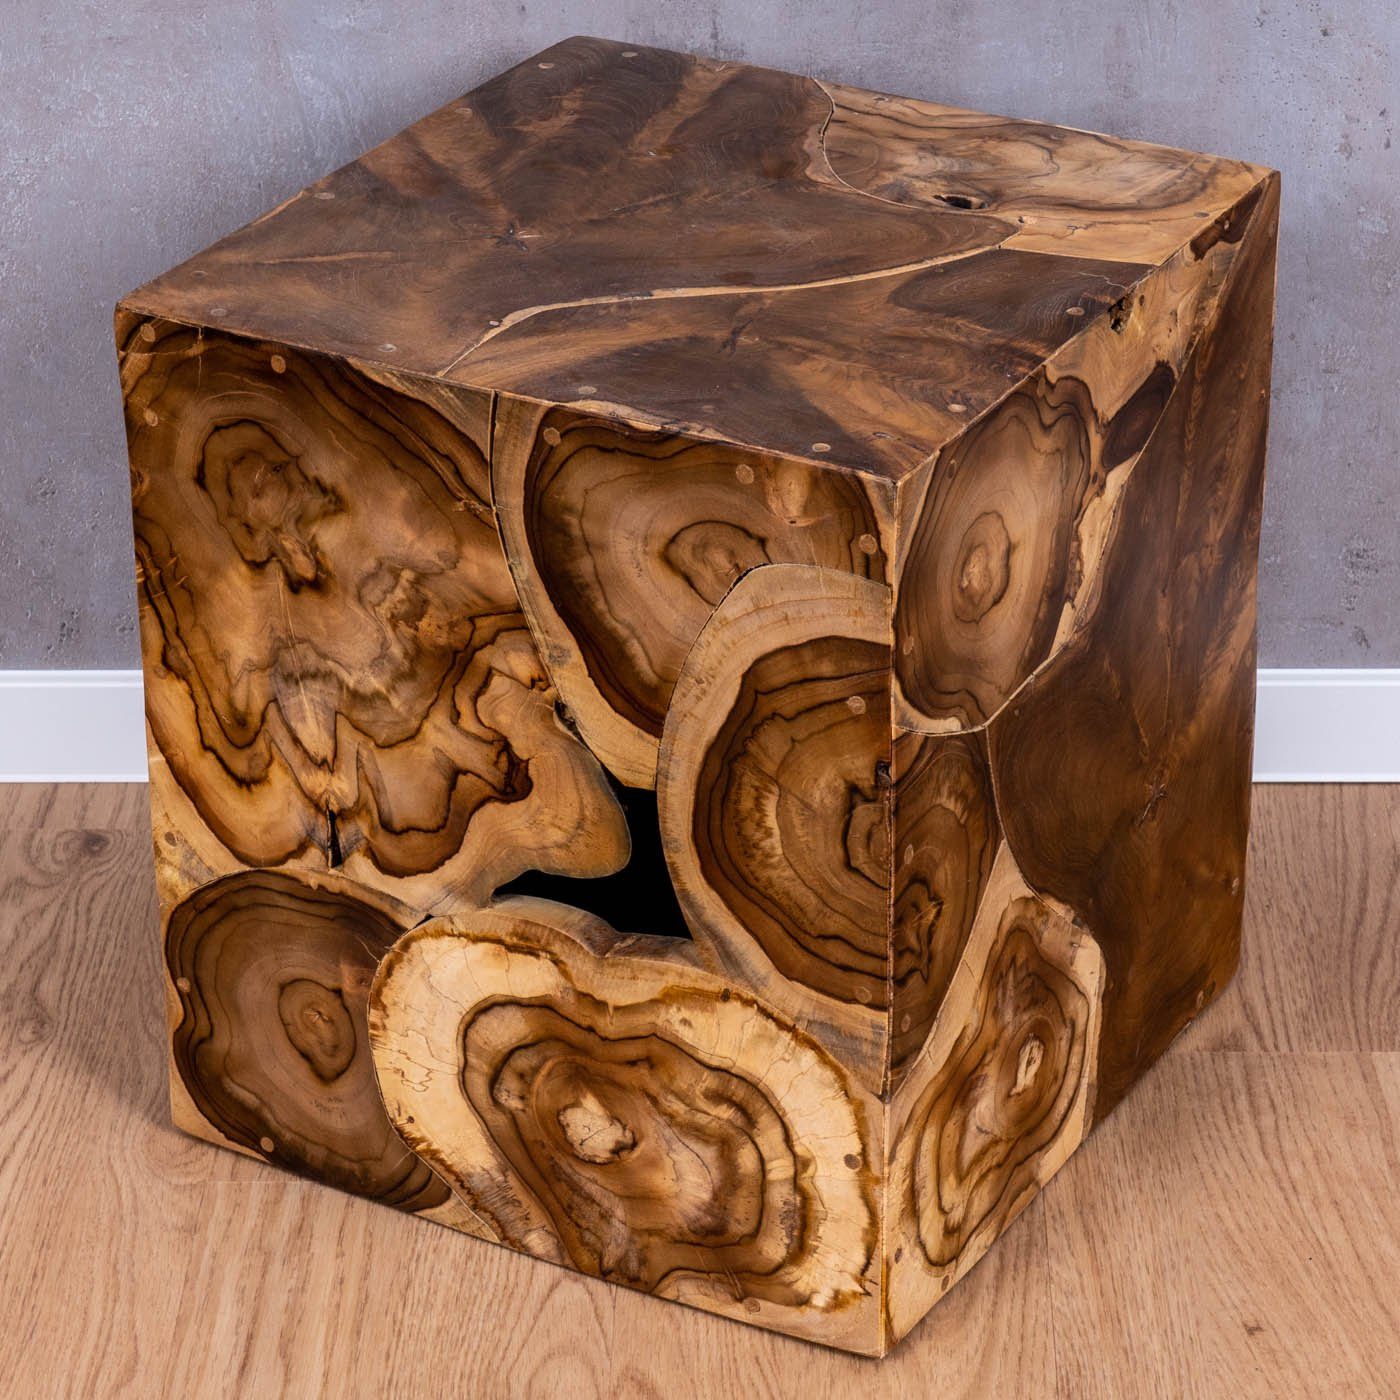 Holztisch Teakholz Hocker Levandeo® Beistelltisch Couchtisch, 45cm Höhe Holzhocker Tisch